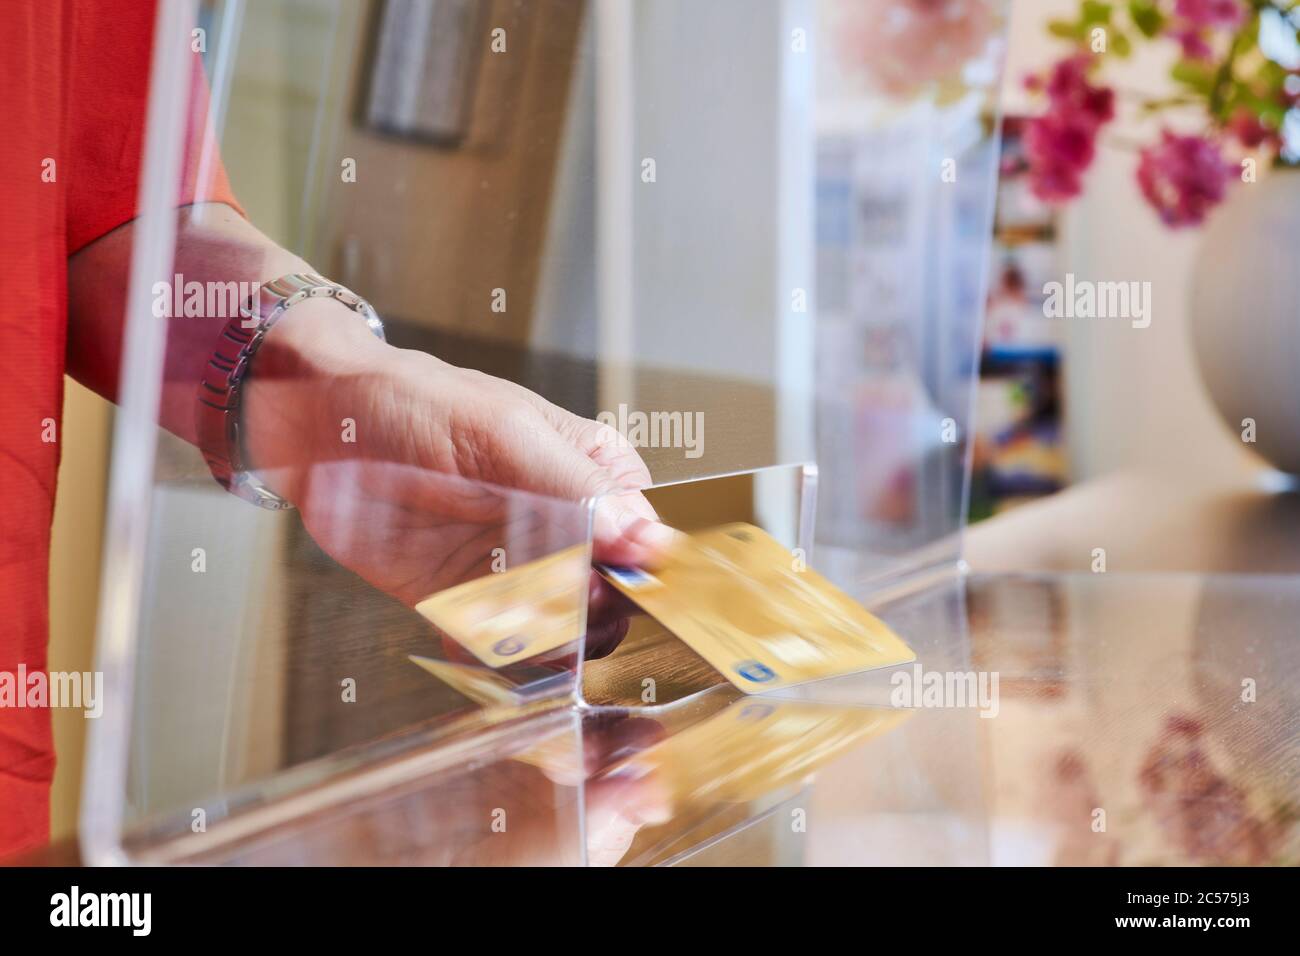 Protezione simbolica da infezioni delle immagini, disco trasparente di protezione sputa, donna passa la sua carta attraverso lo slot passante Foto Stock